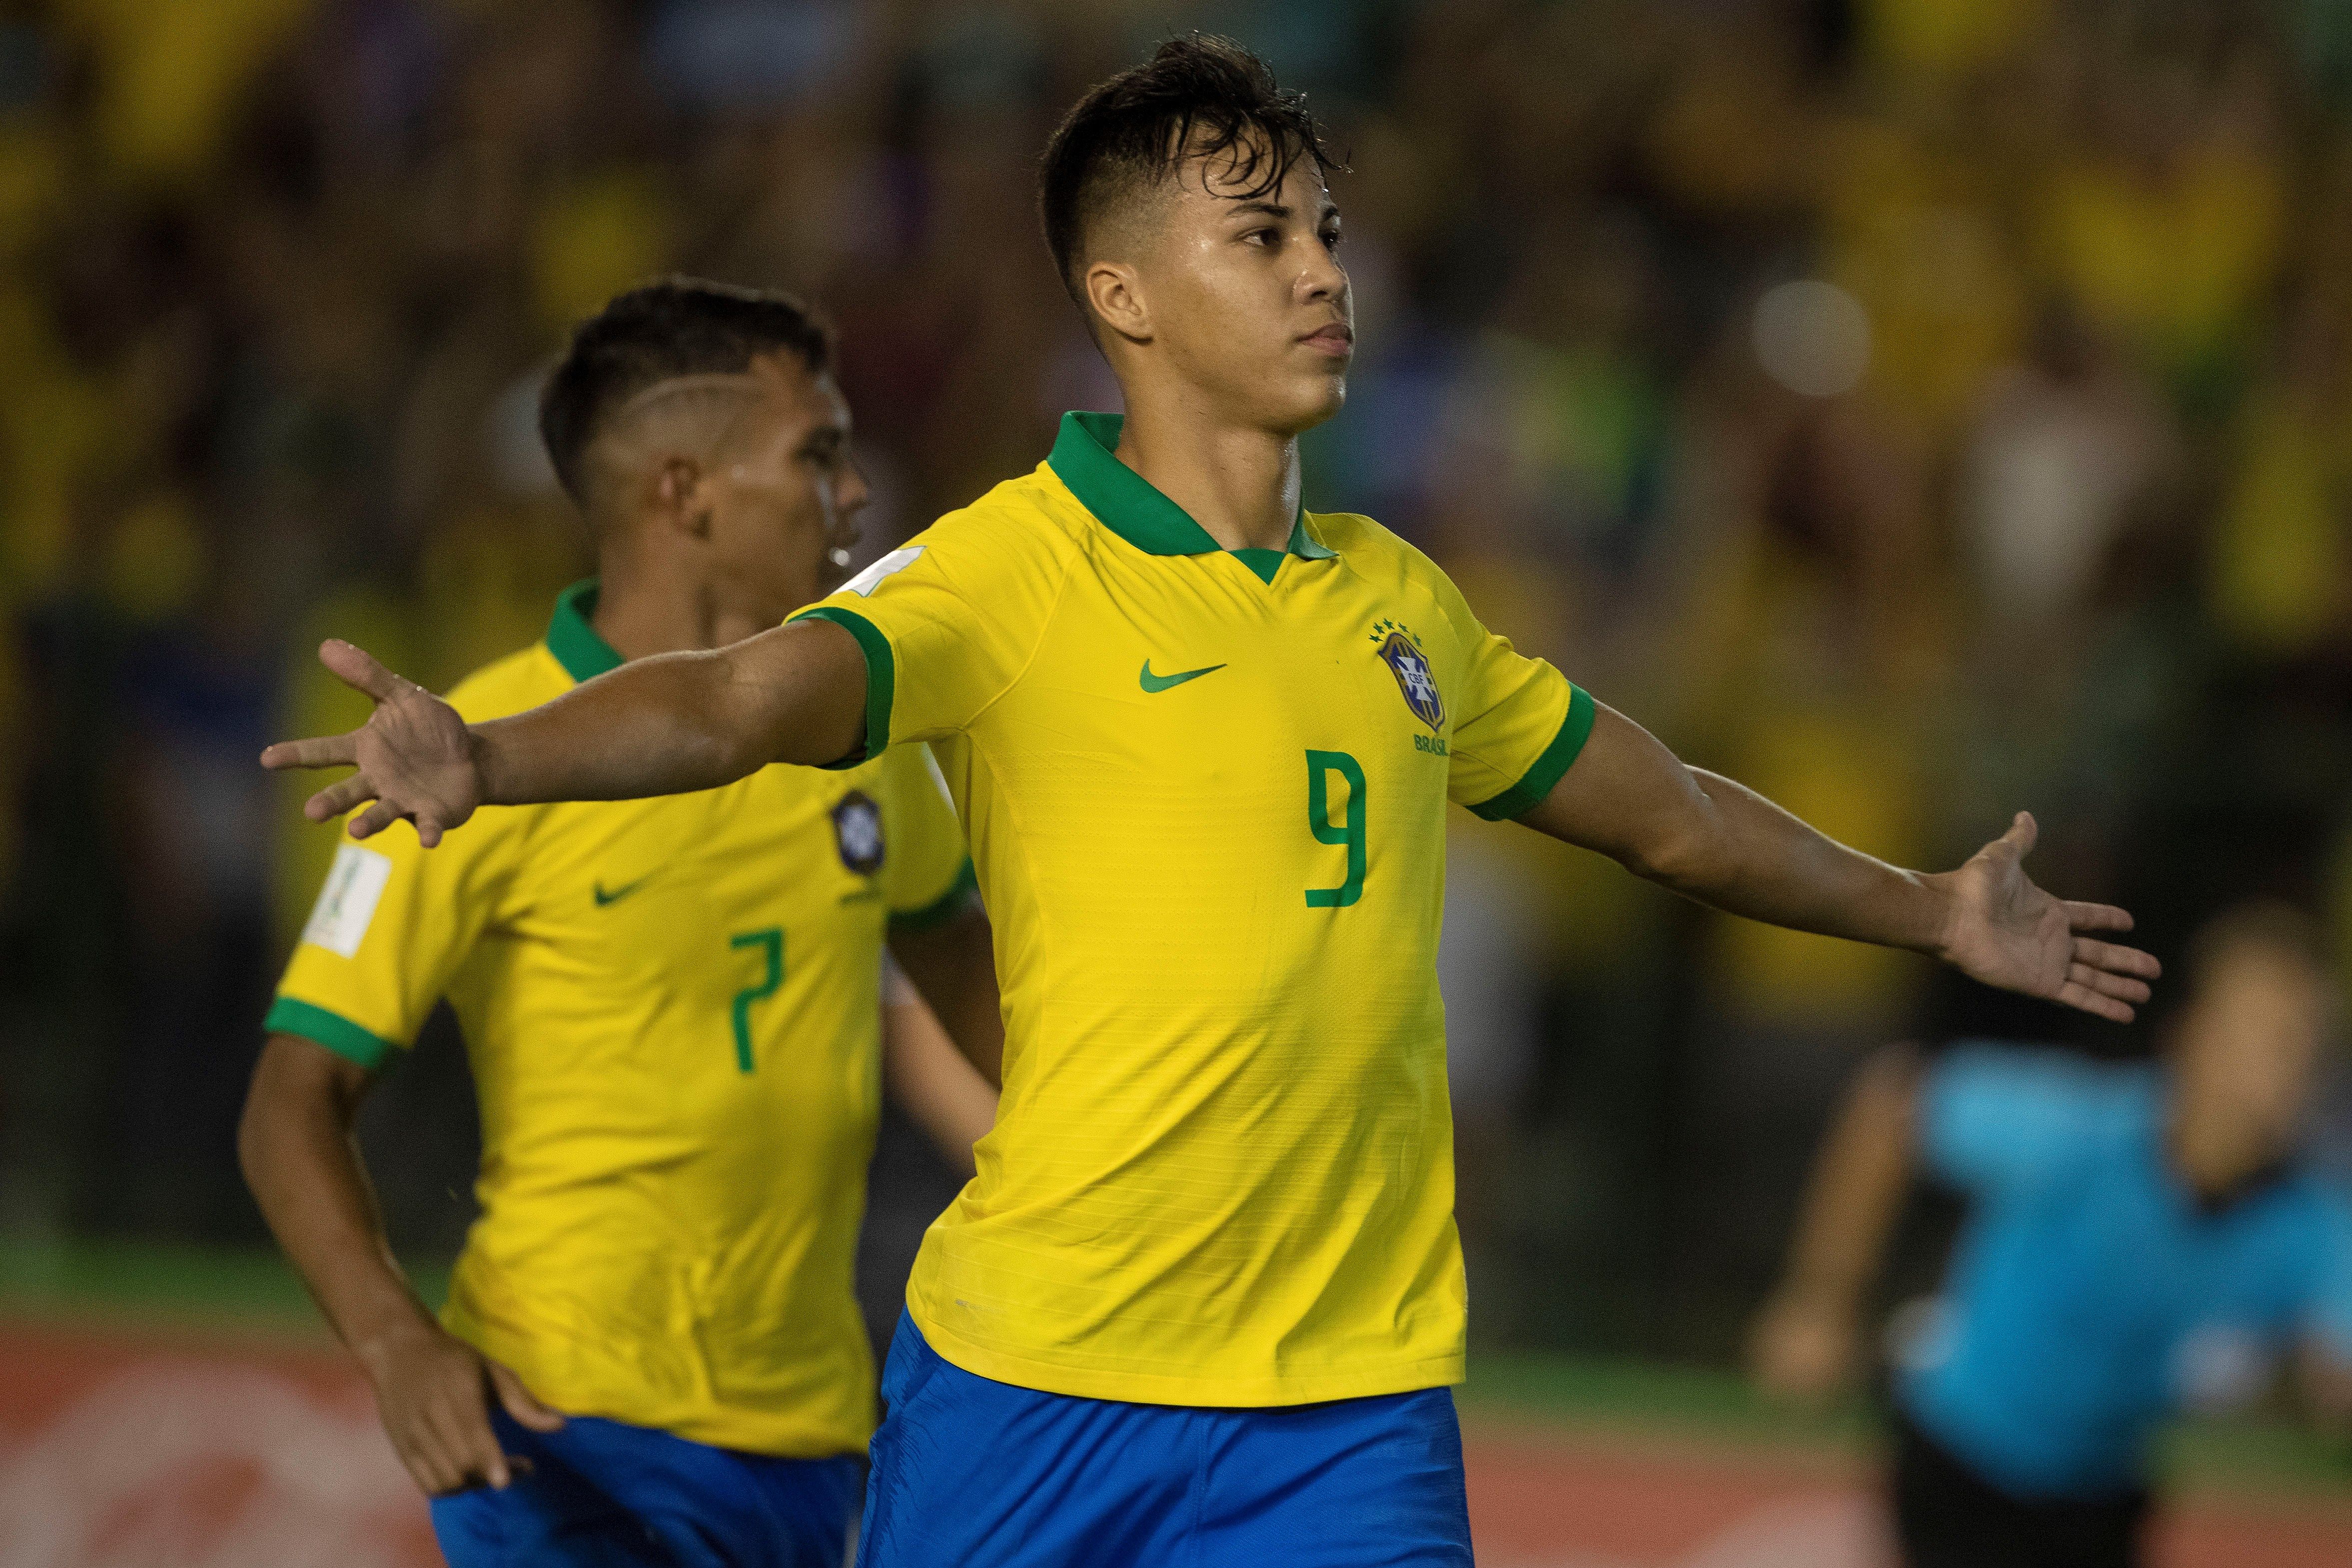  El brasileño Kaio Jorge celebra luego de anotar el 1-1 durante la final de la Copa Mundial de Fútbol sub 17 entre Brasil y México. (Foto Prensa Libre: EFE)